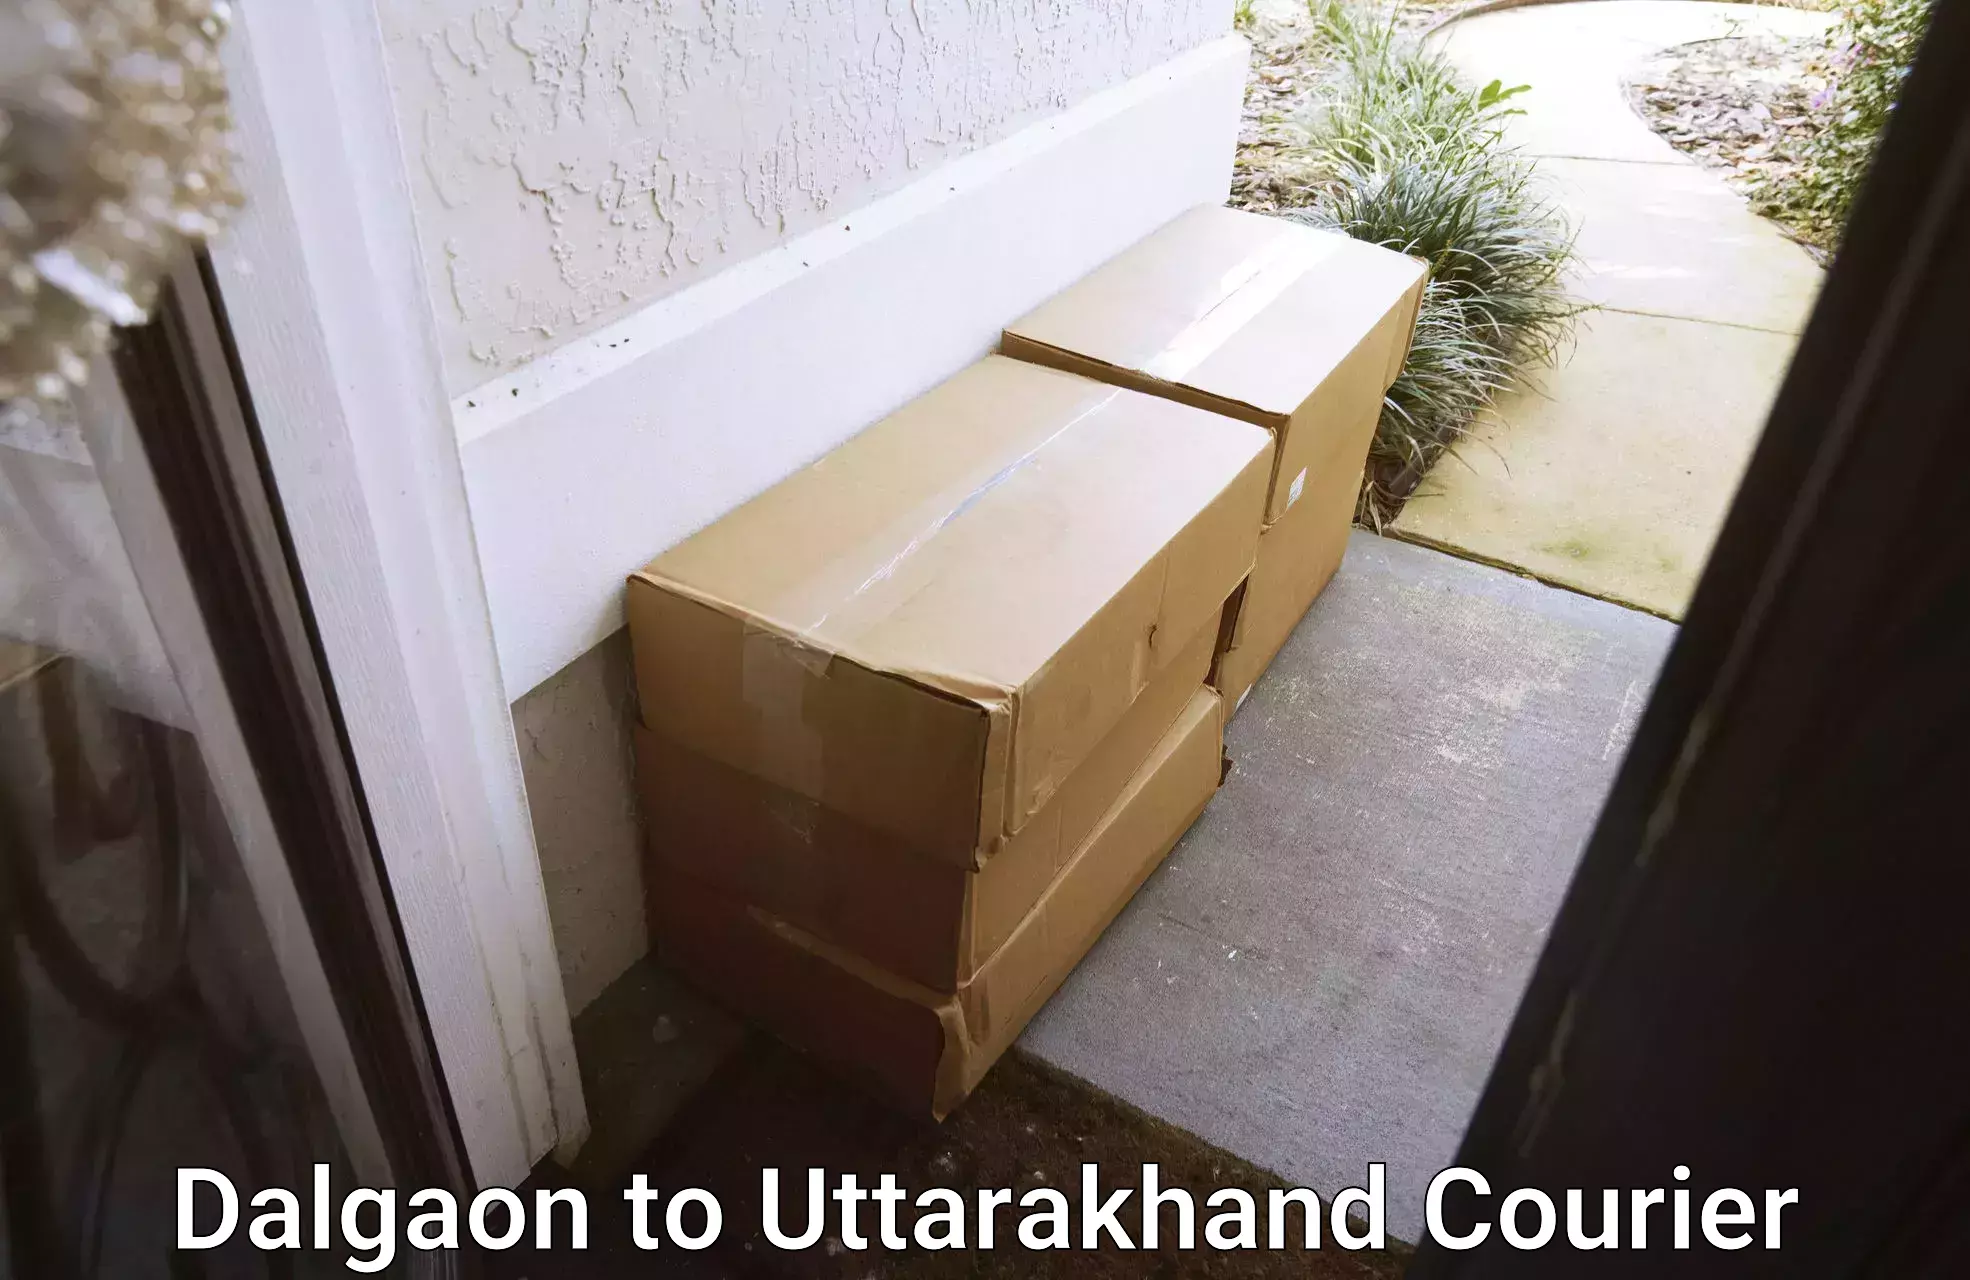 International courier rates Dalgaon to Uttarakhand